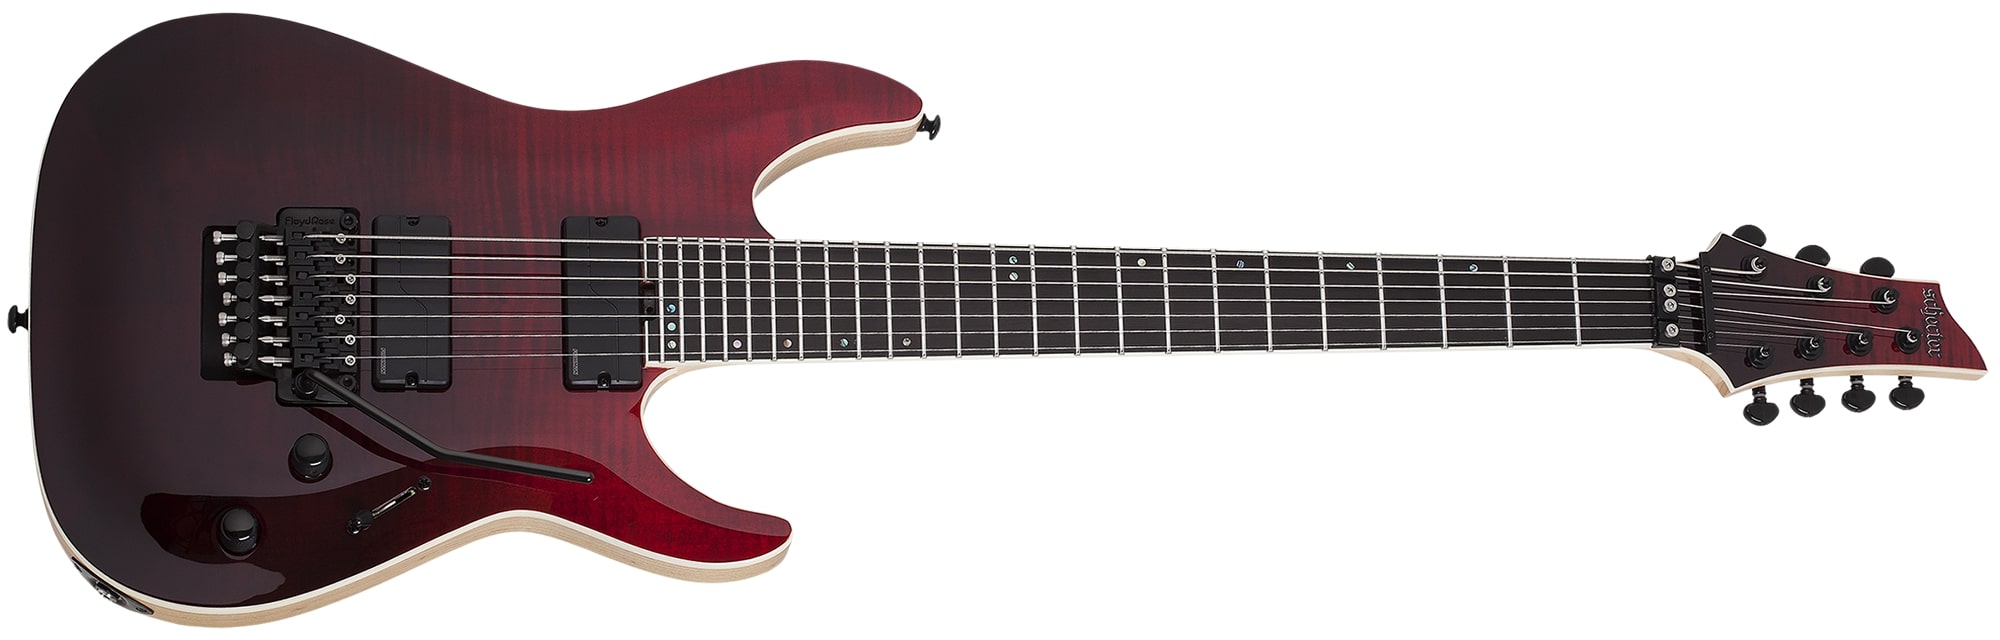 Schecter C-7 FR SLS Elite 7 String Electric Guitar, Blood Burst 1374-SHC